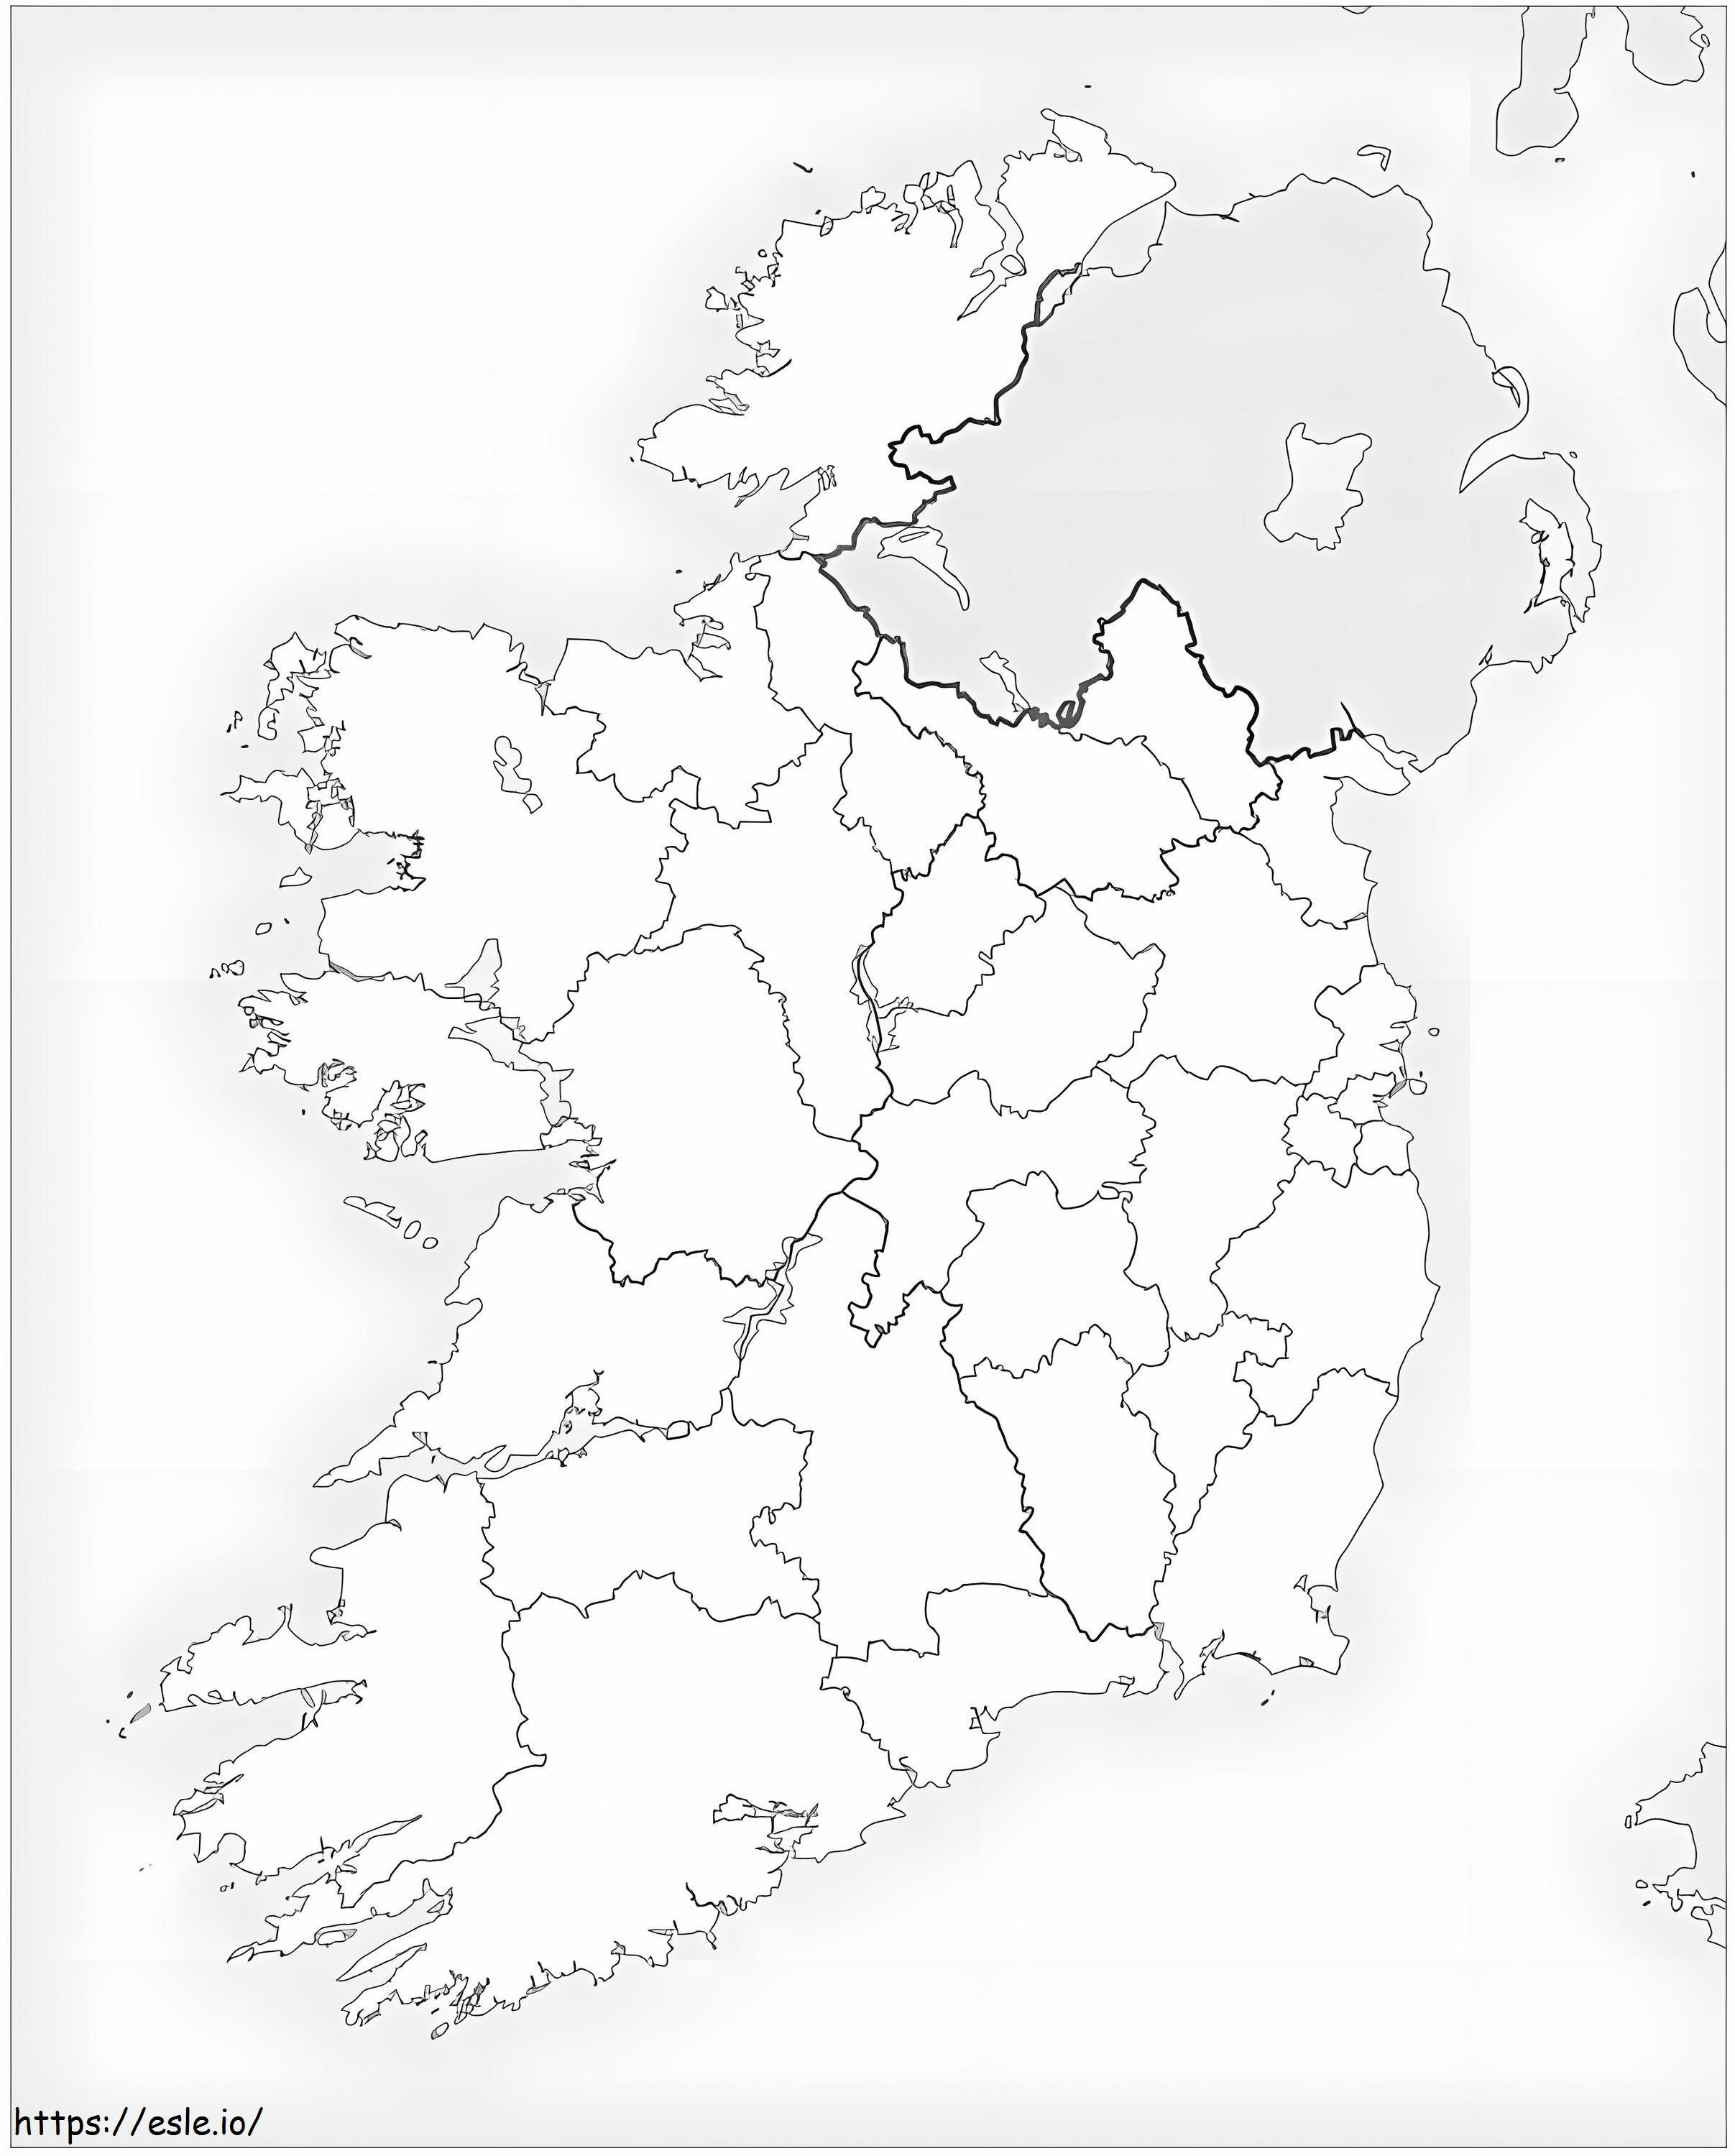 İrlanda Haritası 2 boyama